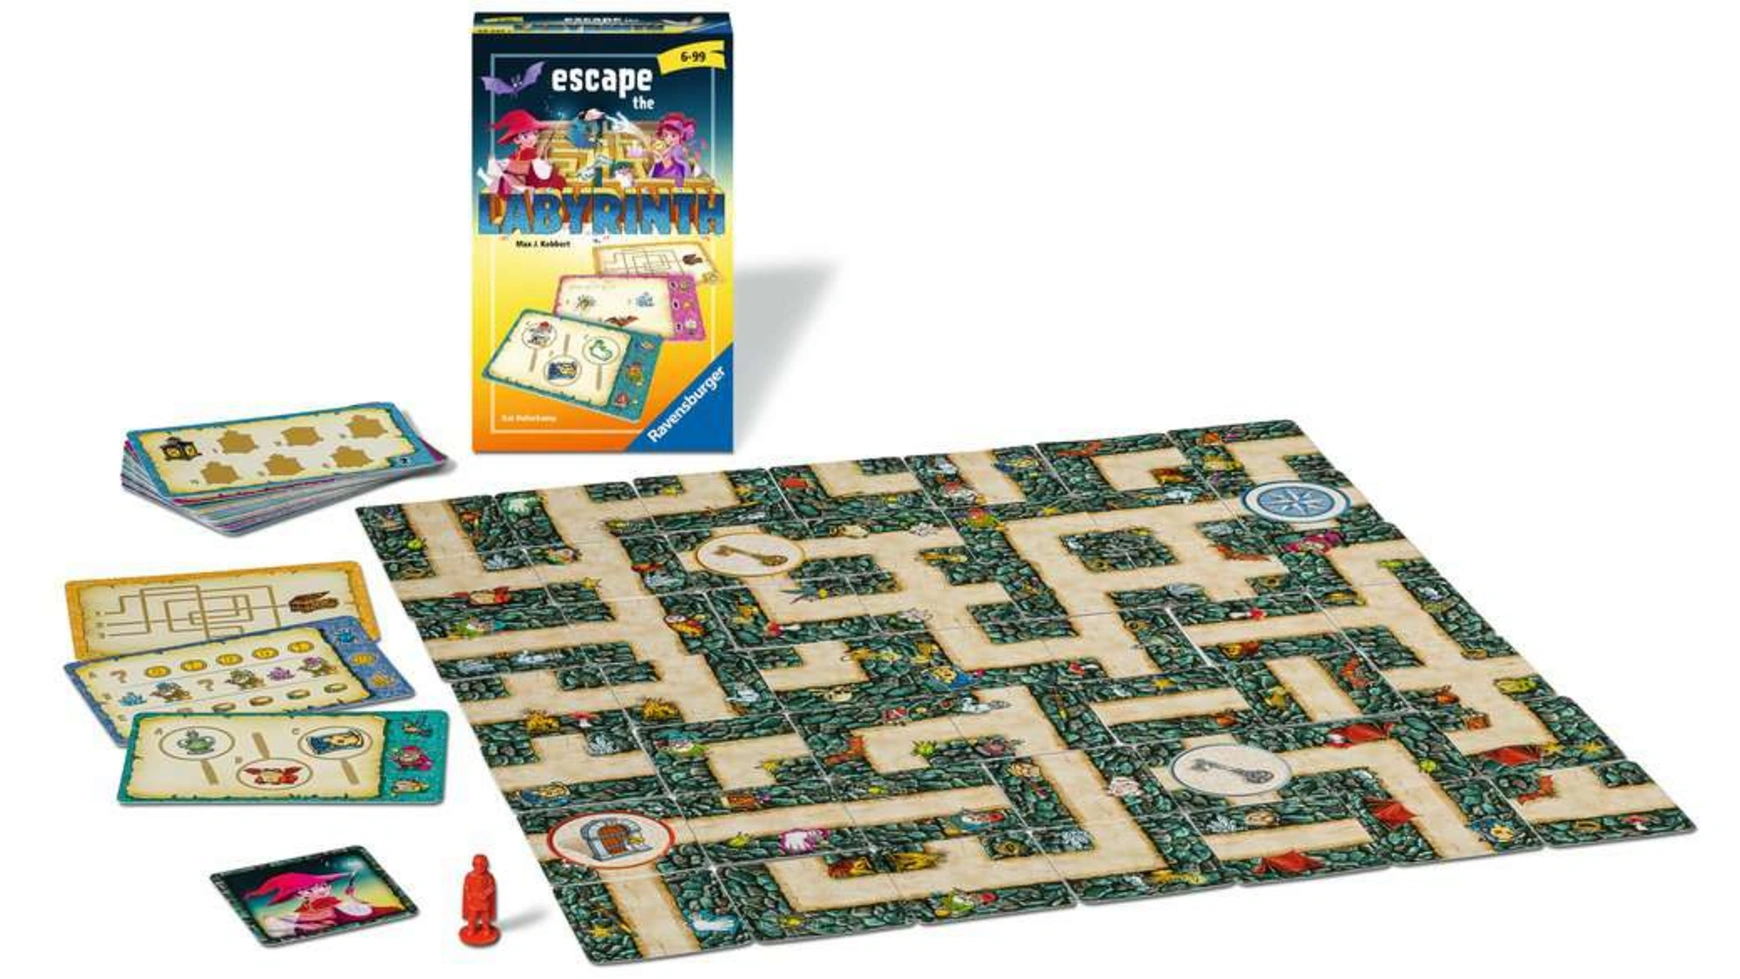 Ravensburger Spiele игра с собой Escape the Labyrinth кооперативный лабиринт-головоломка для детей от 6 лет и старше